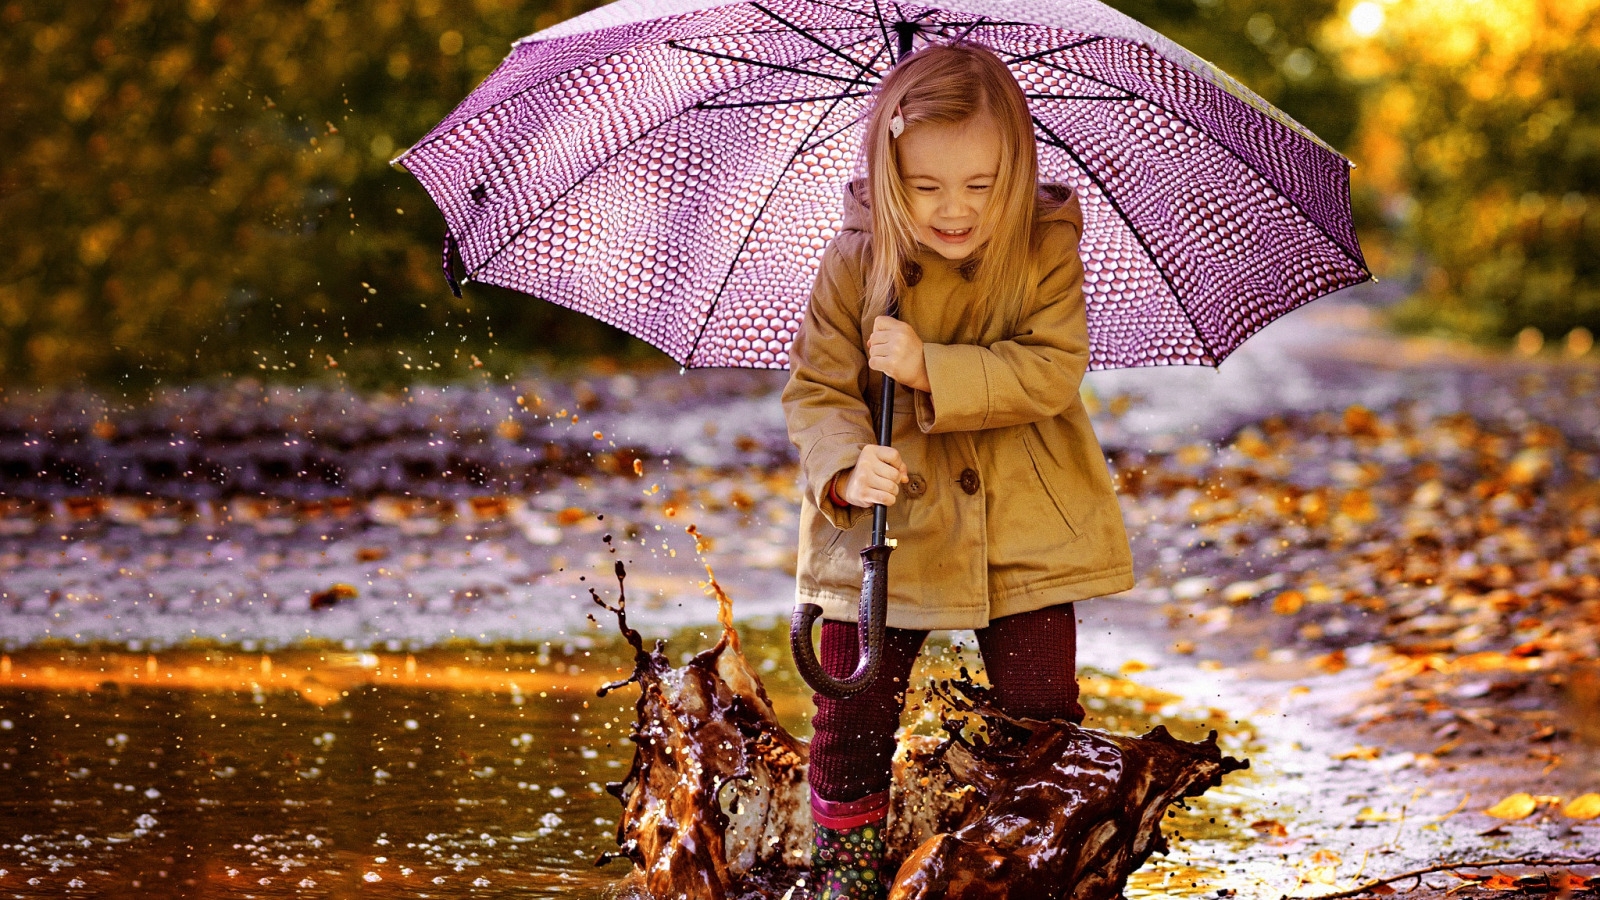 І дощ не налякає: як захистити взуття від води підручними засобами - фото №1